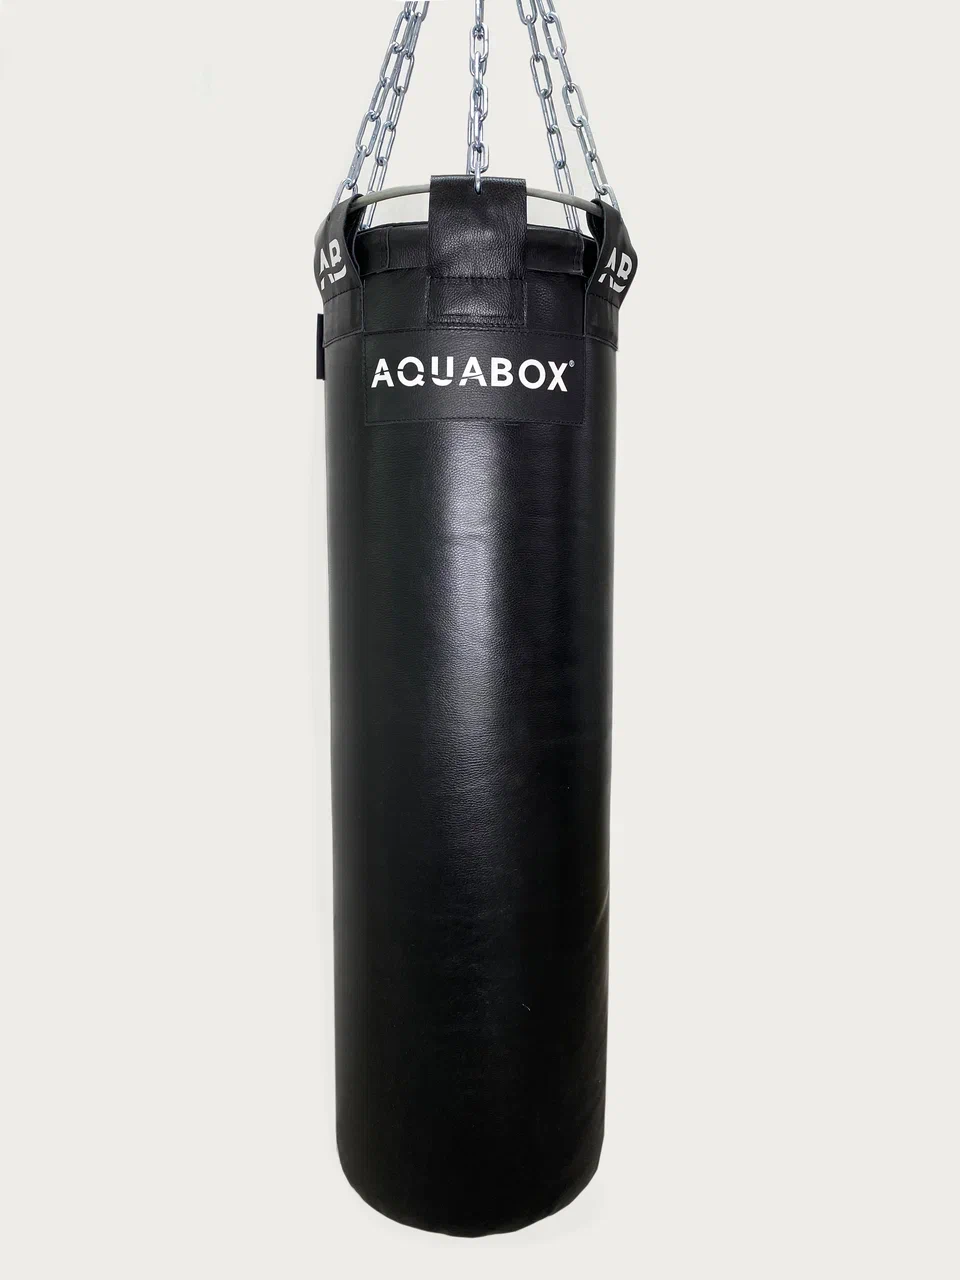 Фото мешок водоналивной кожаный боксерский aquabox 35х180 см, вес 80 кг